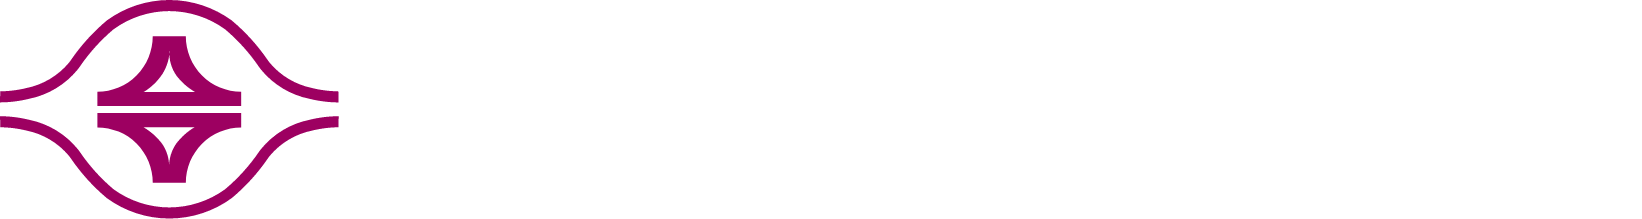 Formosa Plastics logo large for dark backgrounds (transparent PNG)